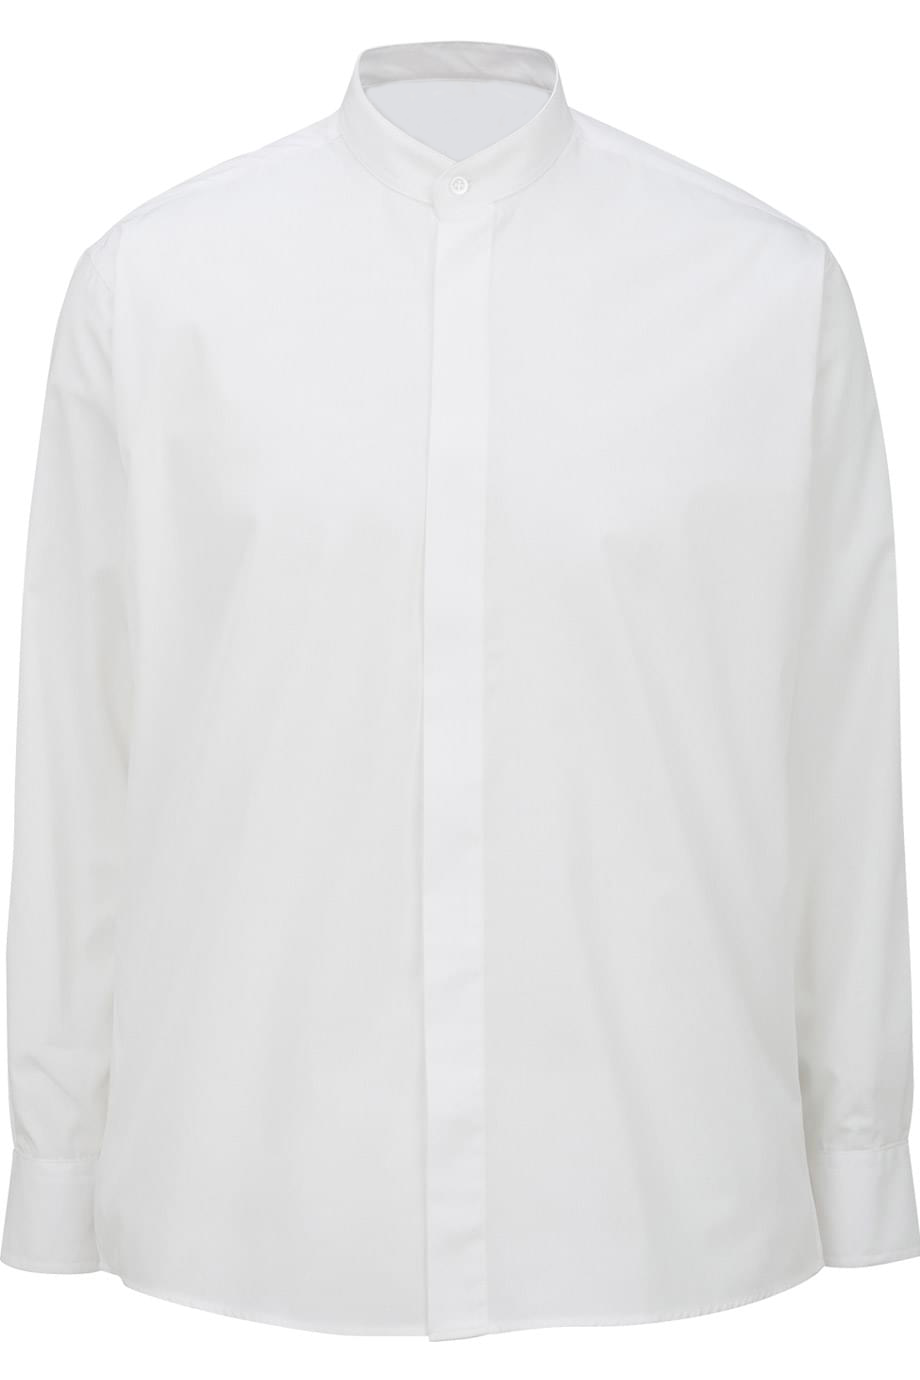 Men's Banded Collar Long-Sleeve Shirt, White